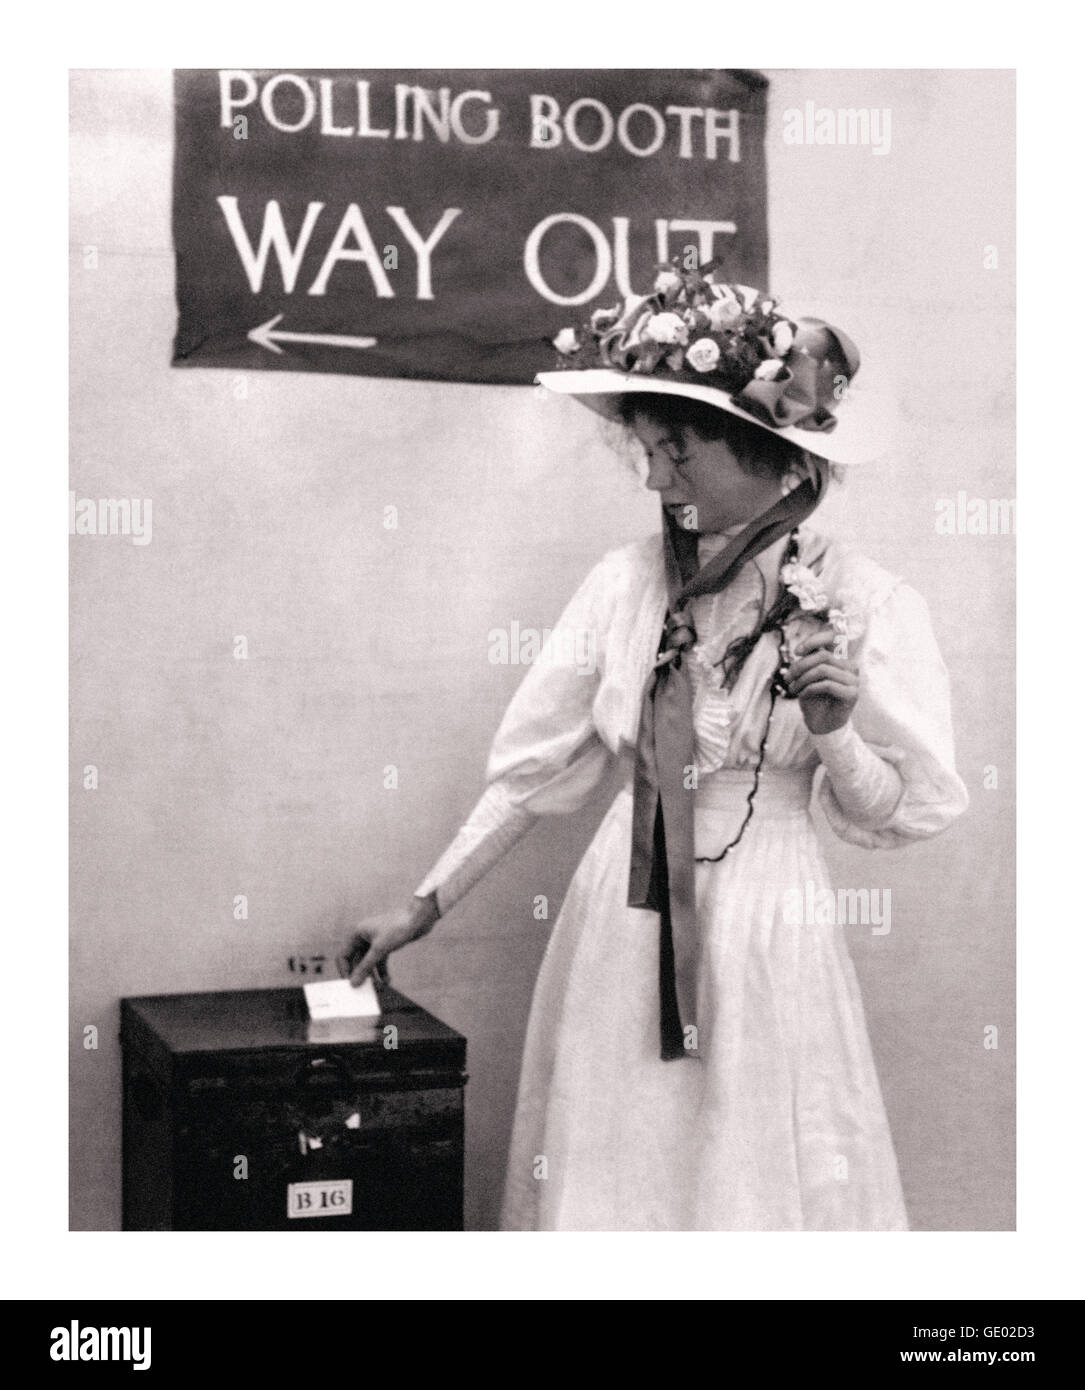 Mouvement suffragette Christabel Pankhurst dans un kiosque de vote au Royaume-Uni vers 1910. Elle était une fille d'Emmeline Pankhurst et une militante politique du mouvement suffragette qui a obtenu des voix pour les femmes. Co-fondateur de l’Union sociale et politique des femmes WSPU Banque D'Images